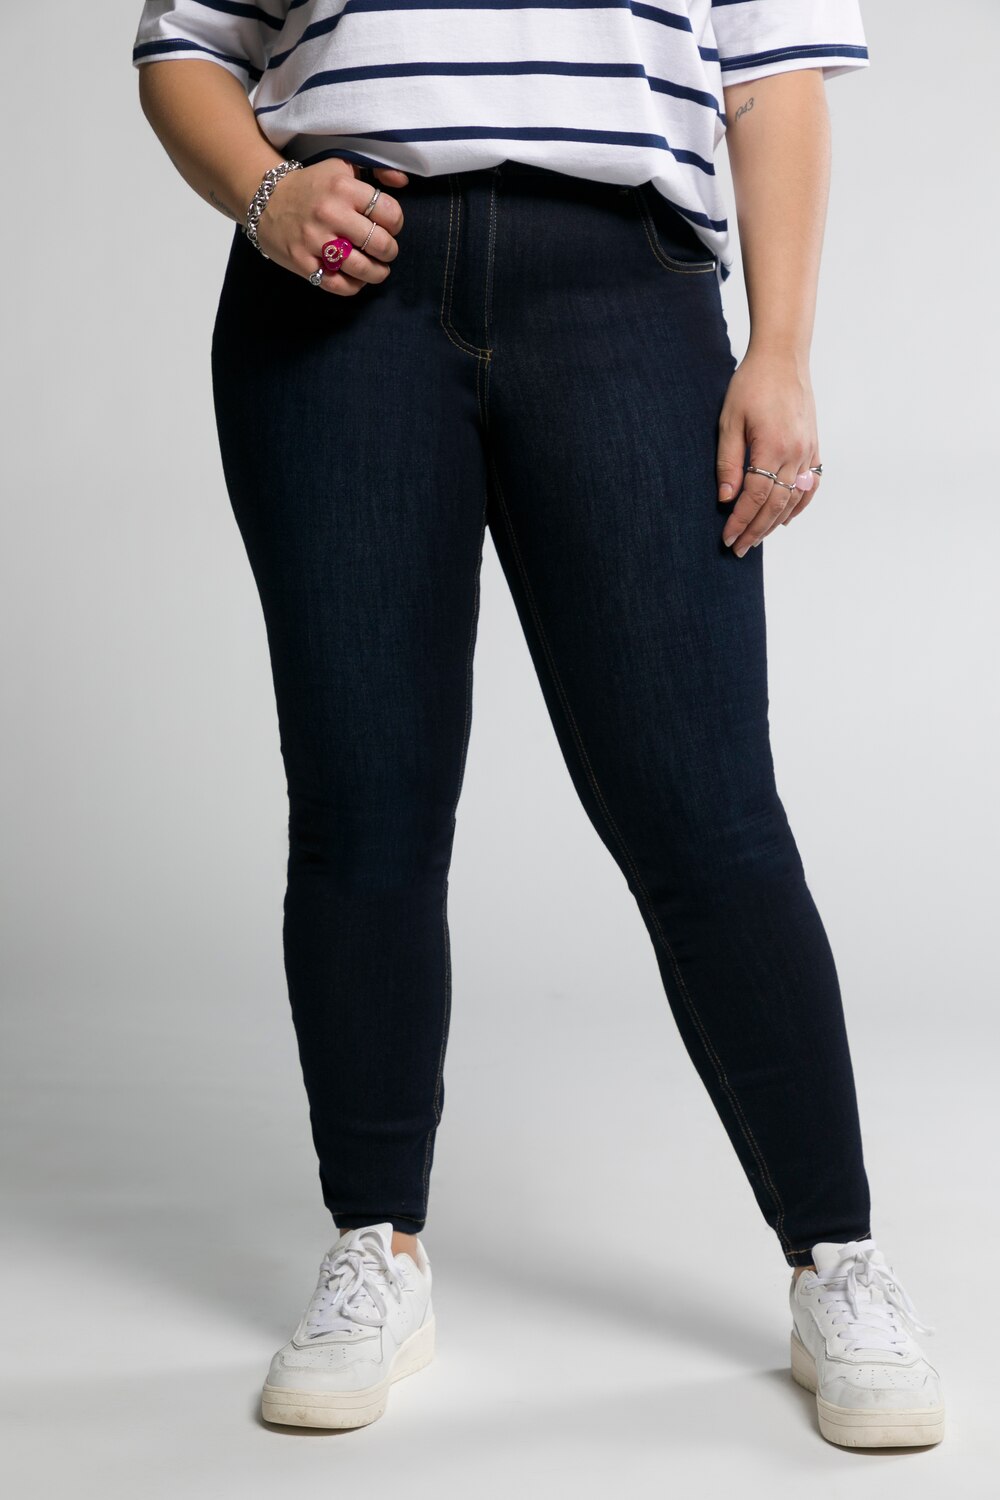 Grote Maten jeans, Dames, blauw, Maat: 50, Katoen/Polyester, Studio Untold